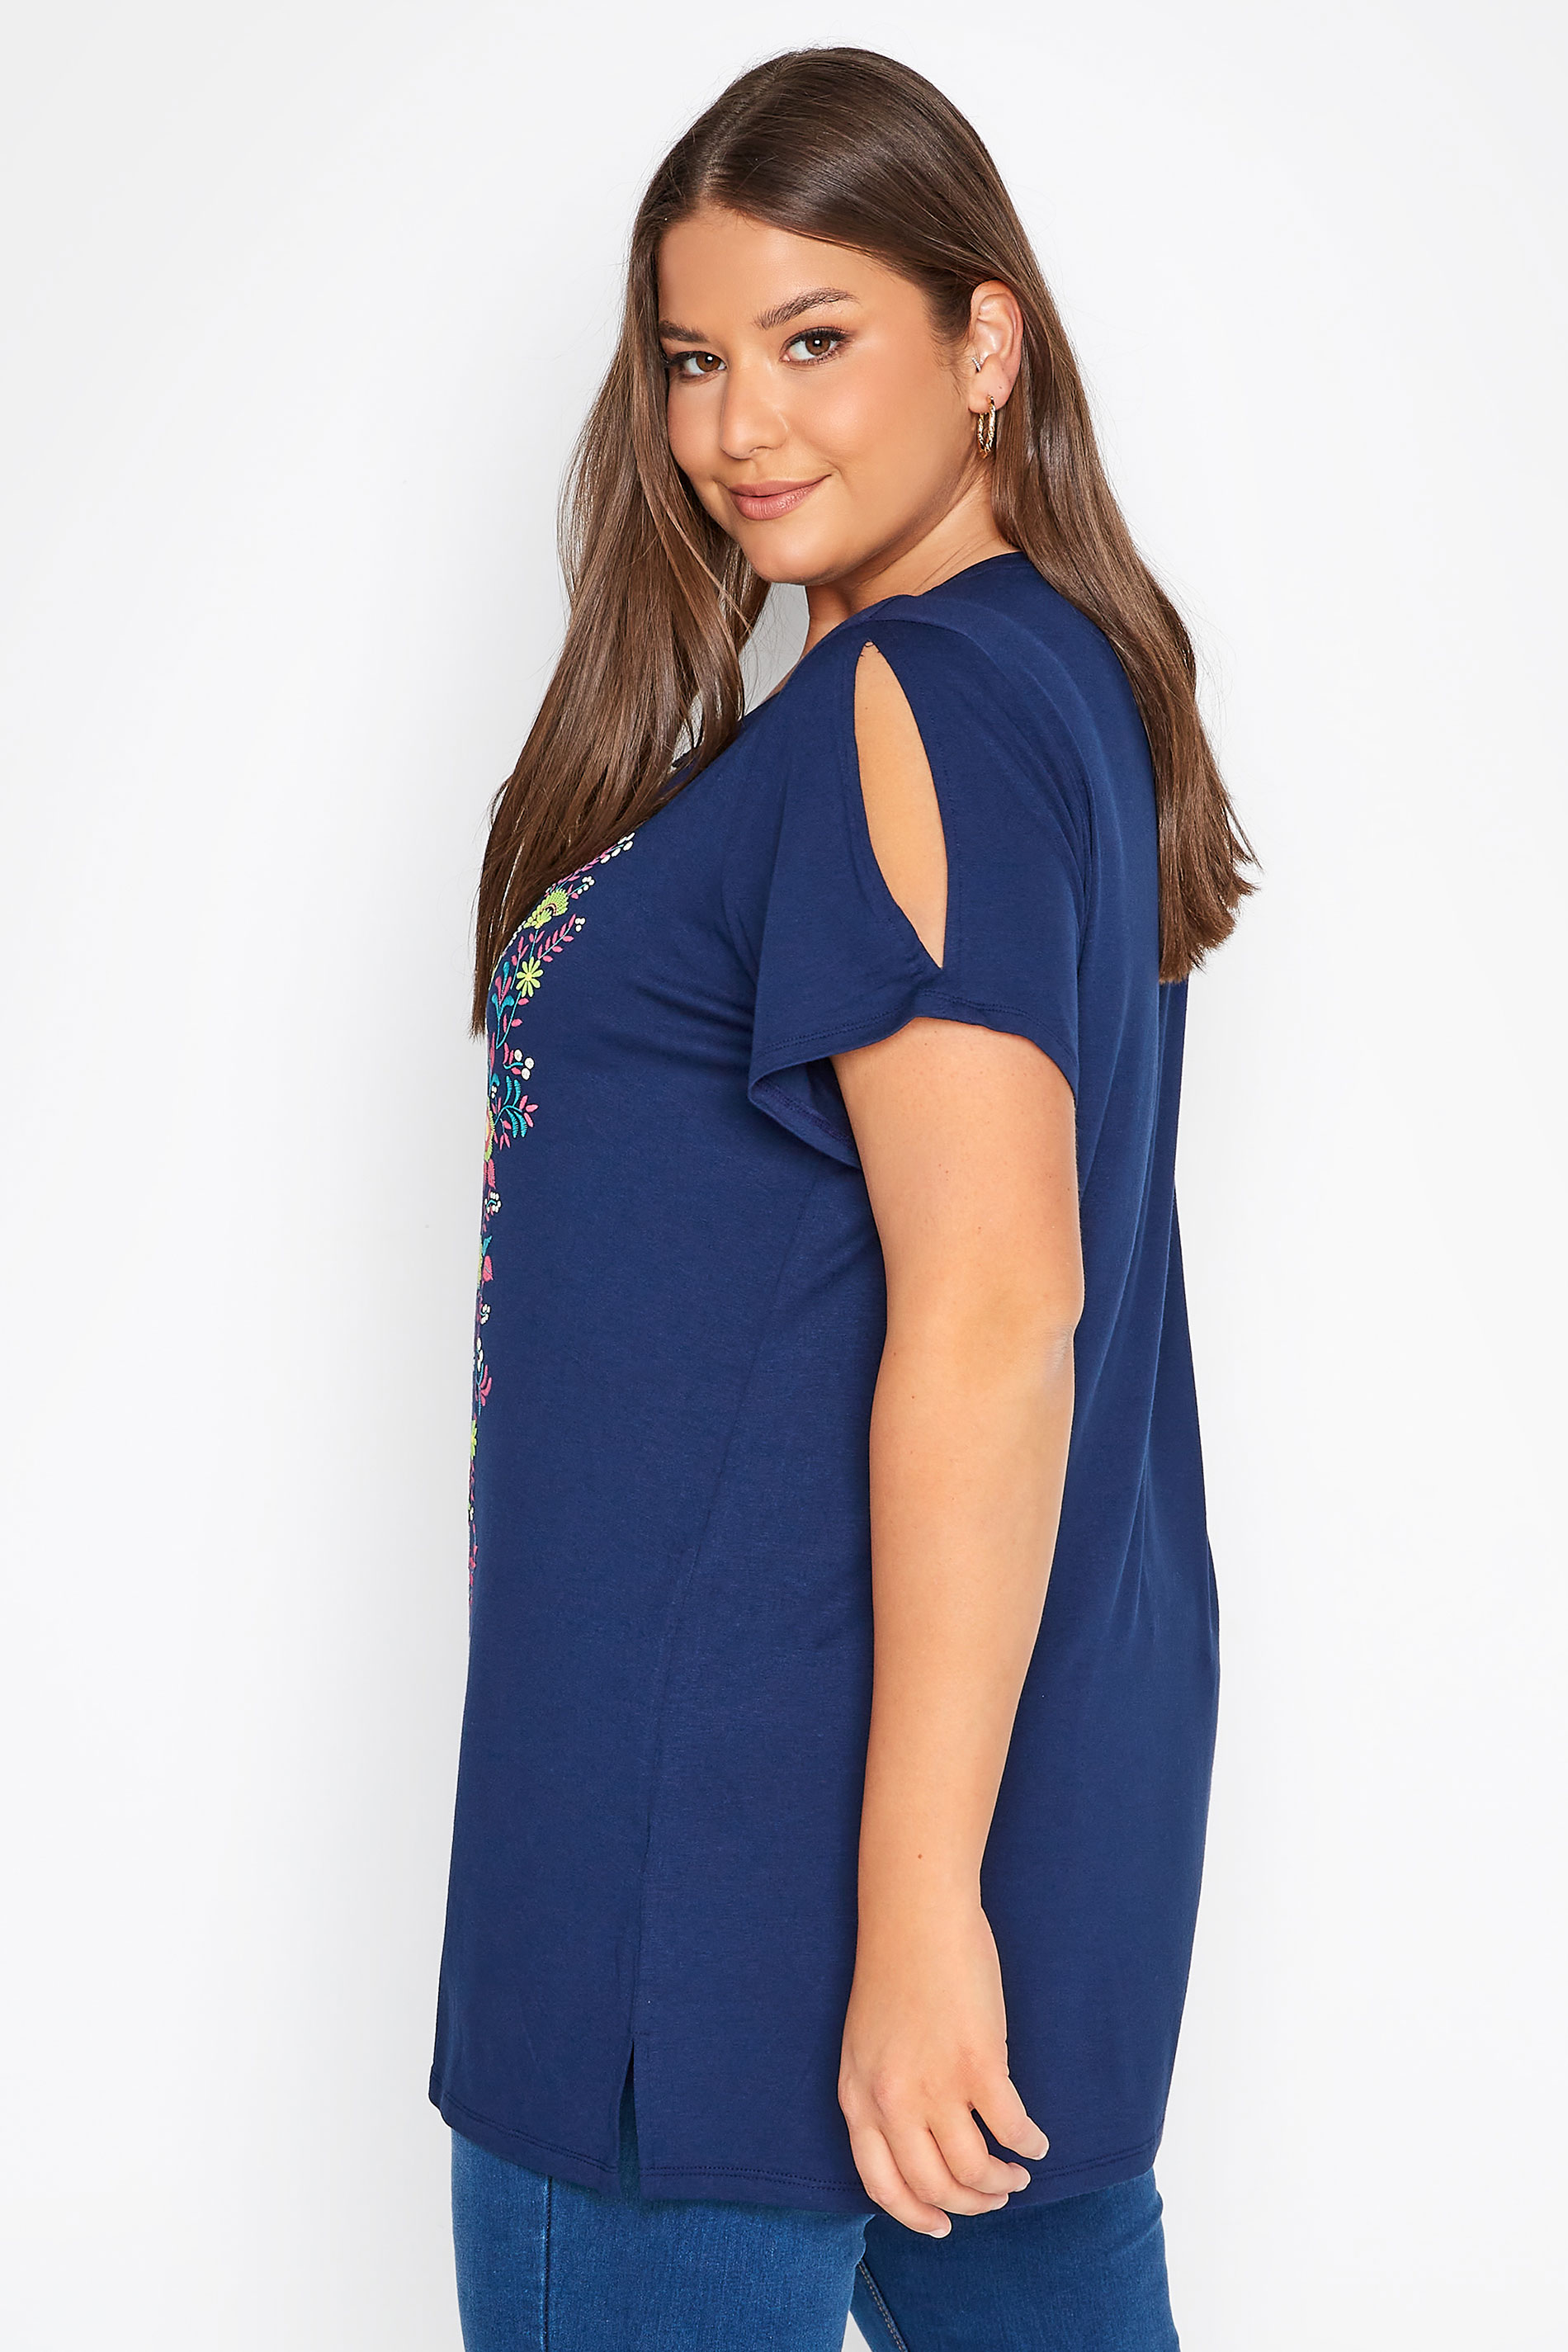 Grande taille  Tops Grande taille  T-Shirts | T-Shirt Bleu Marine Design Floral Manches Découpées - FK15688